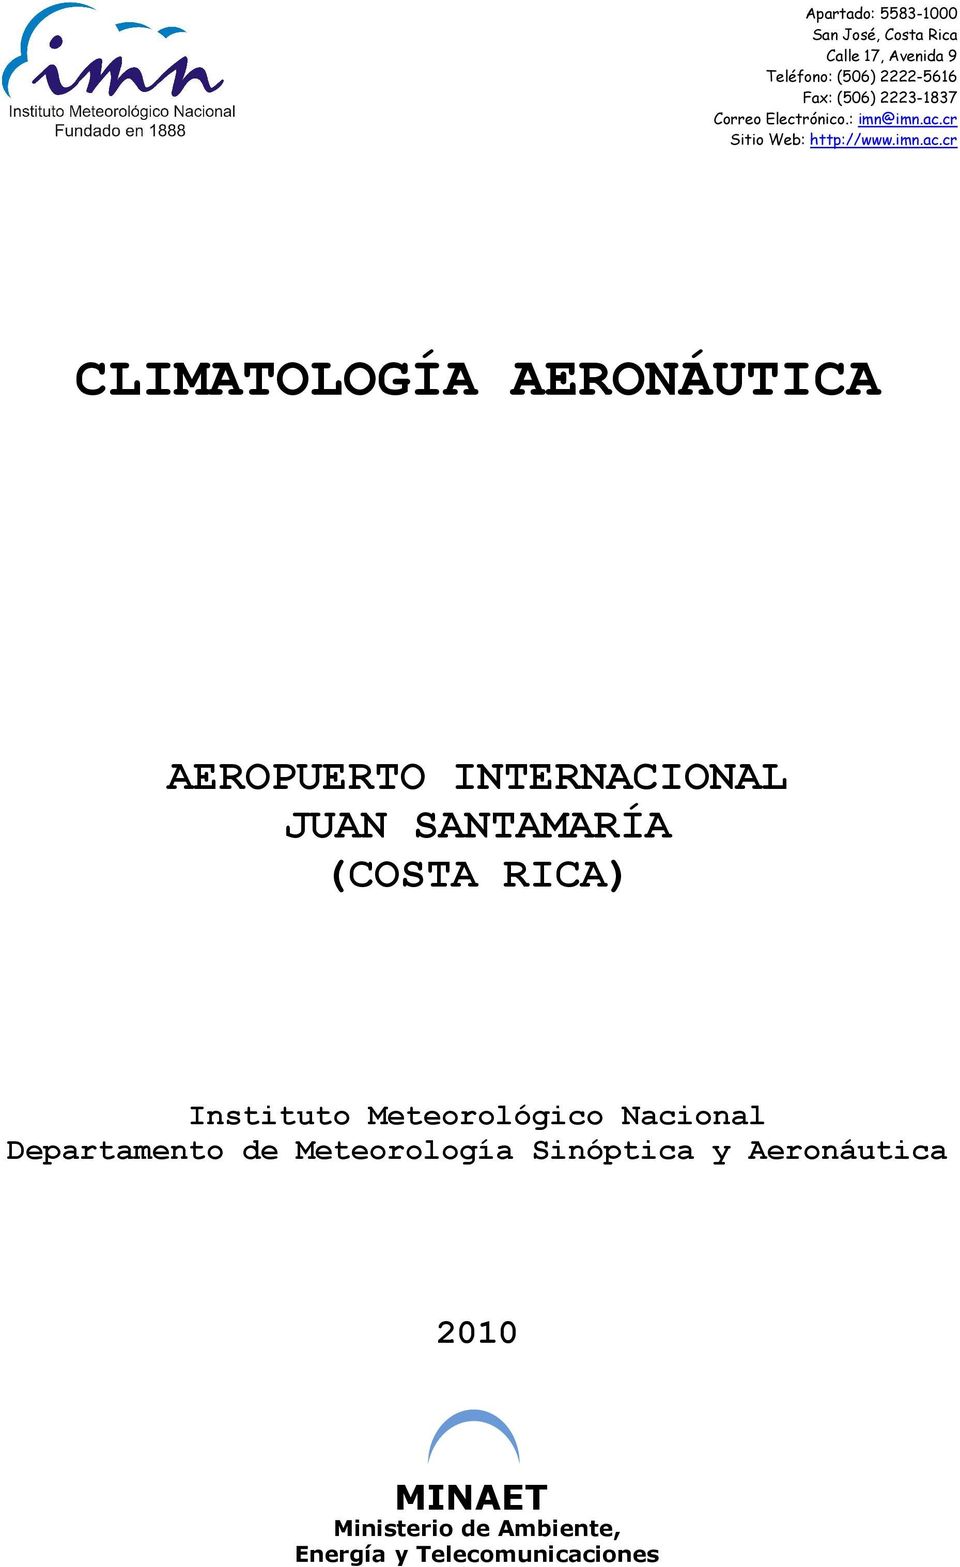 Instituto Meteorológico Nacional